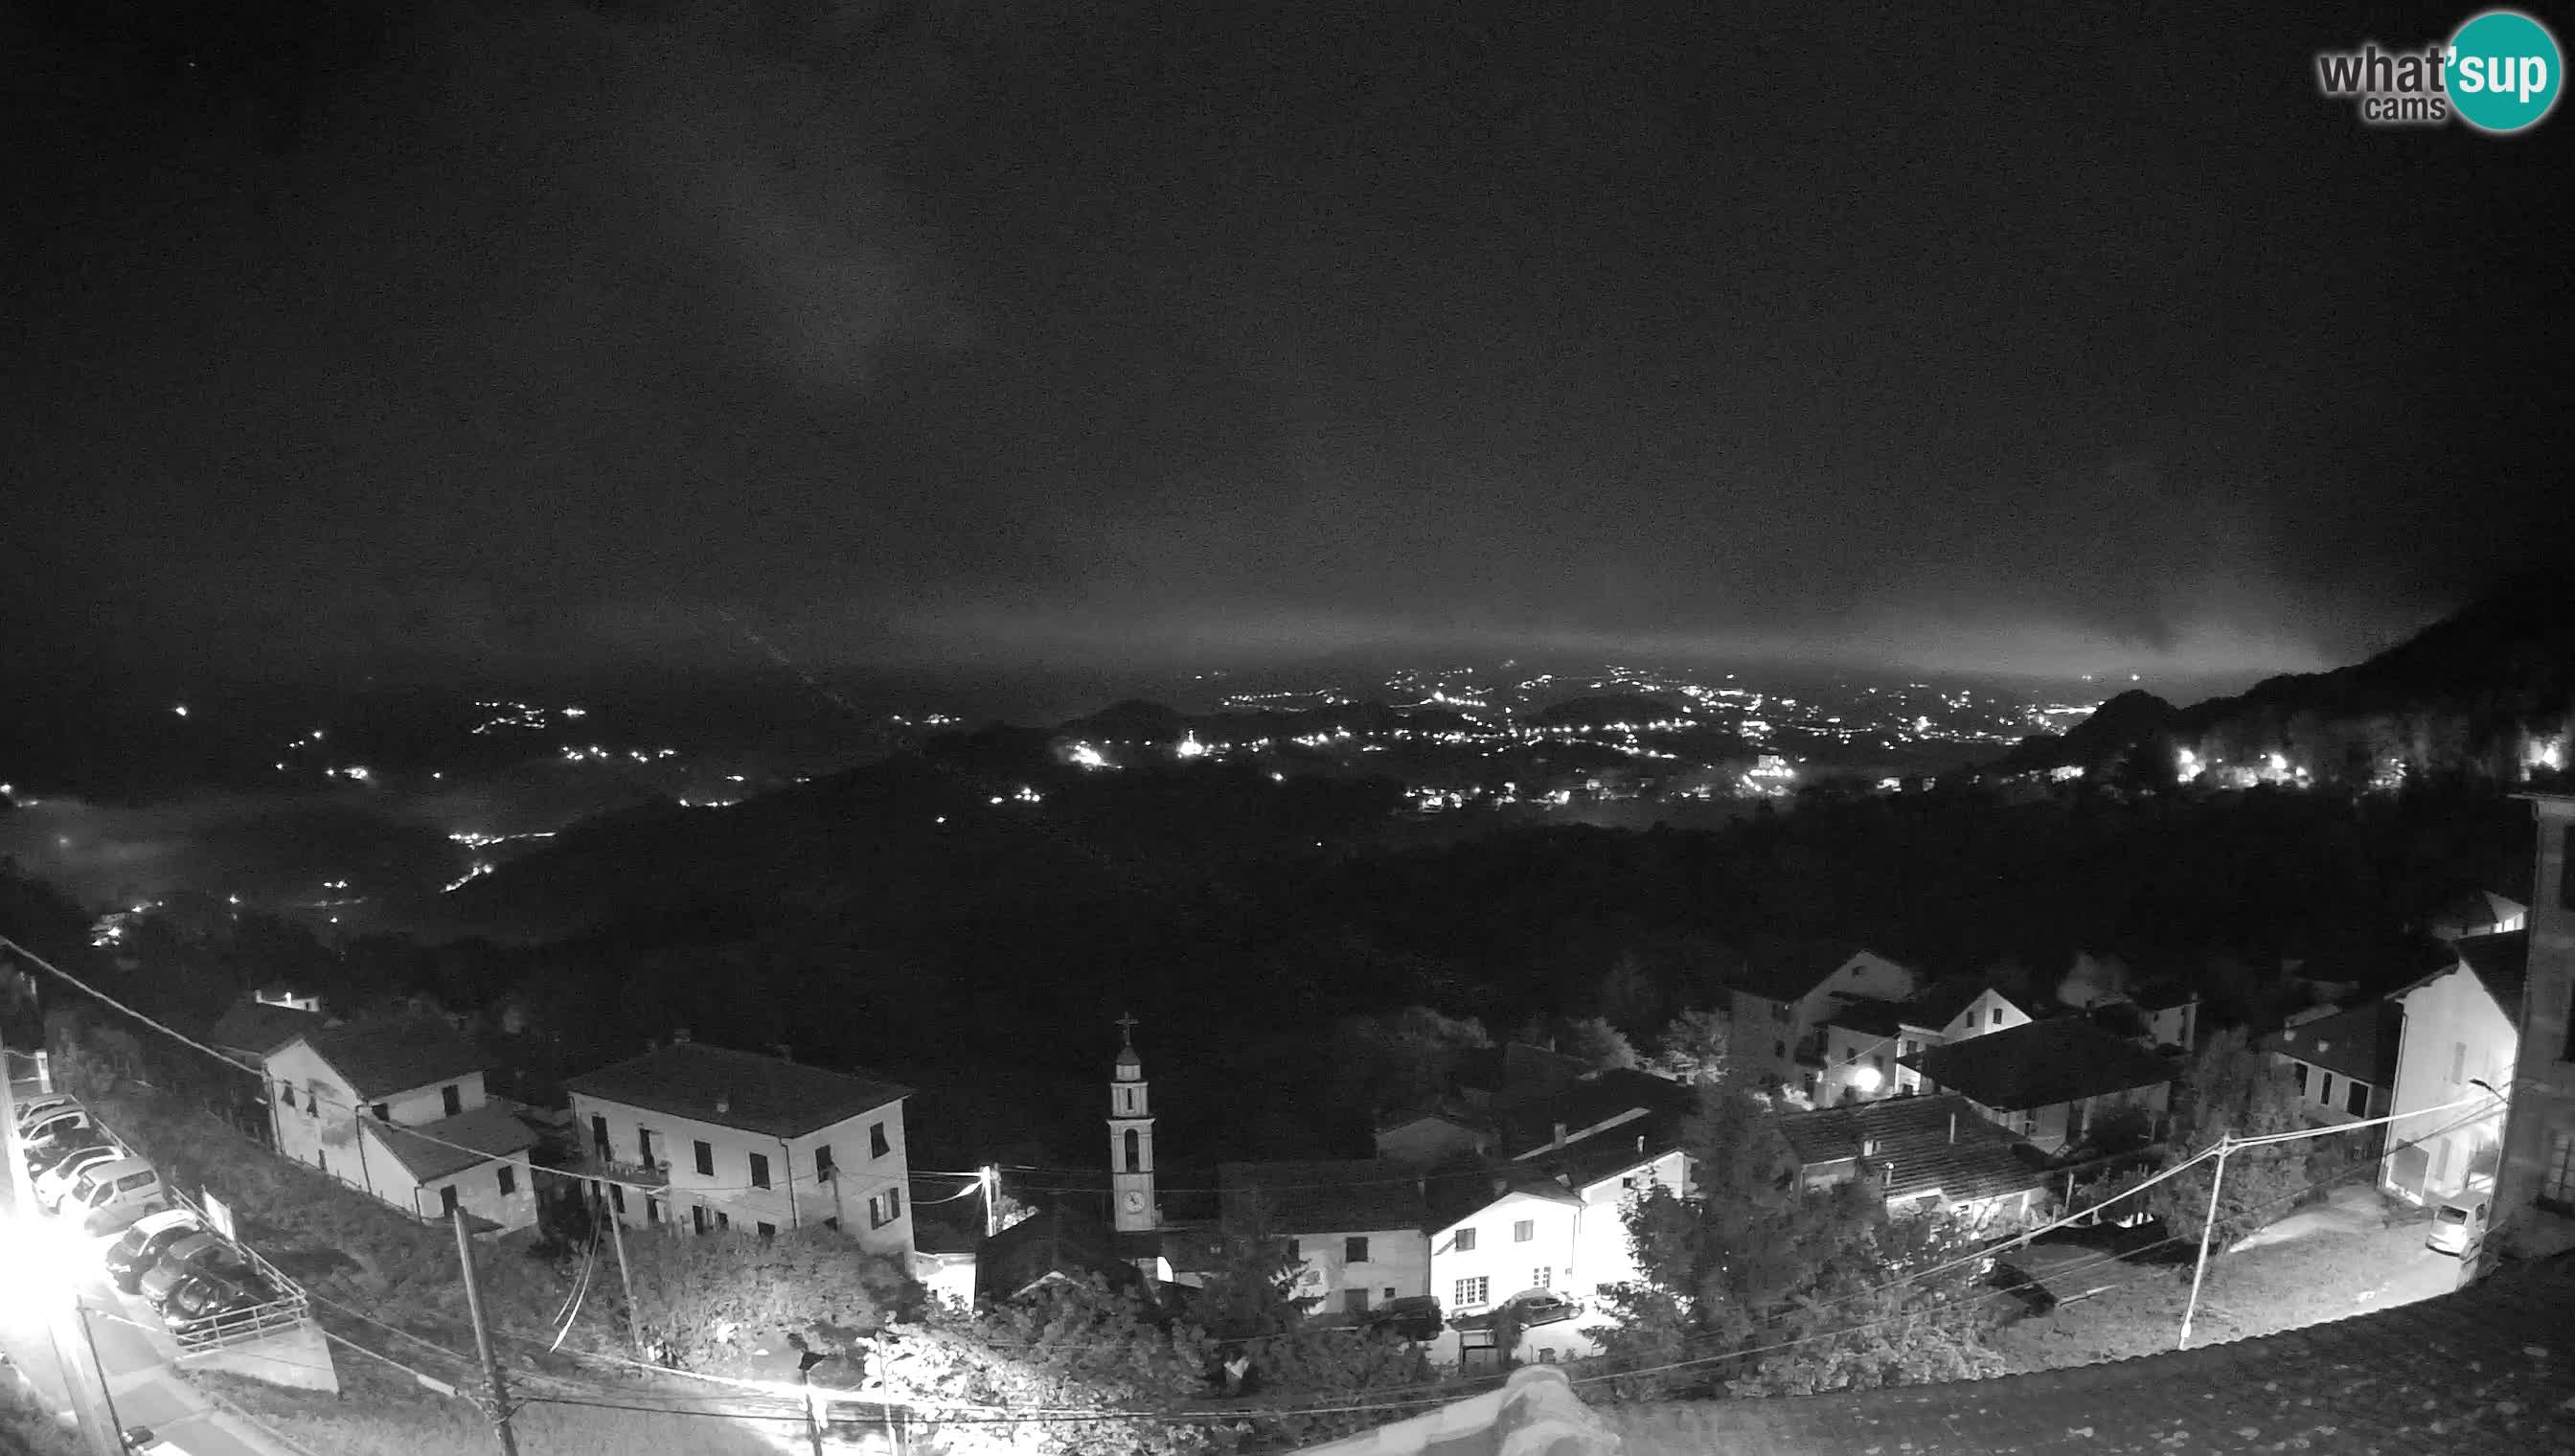 Live Chiavari webcam Villa Oneto – Leivi